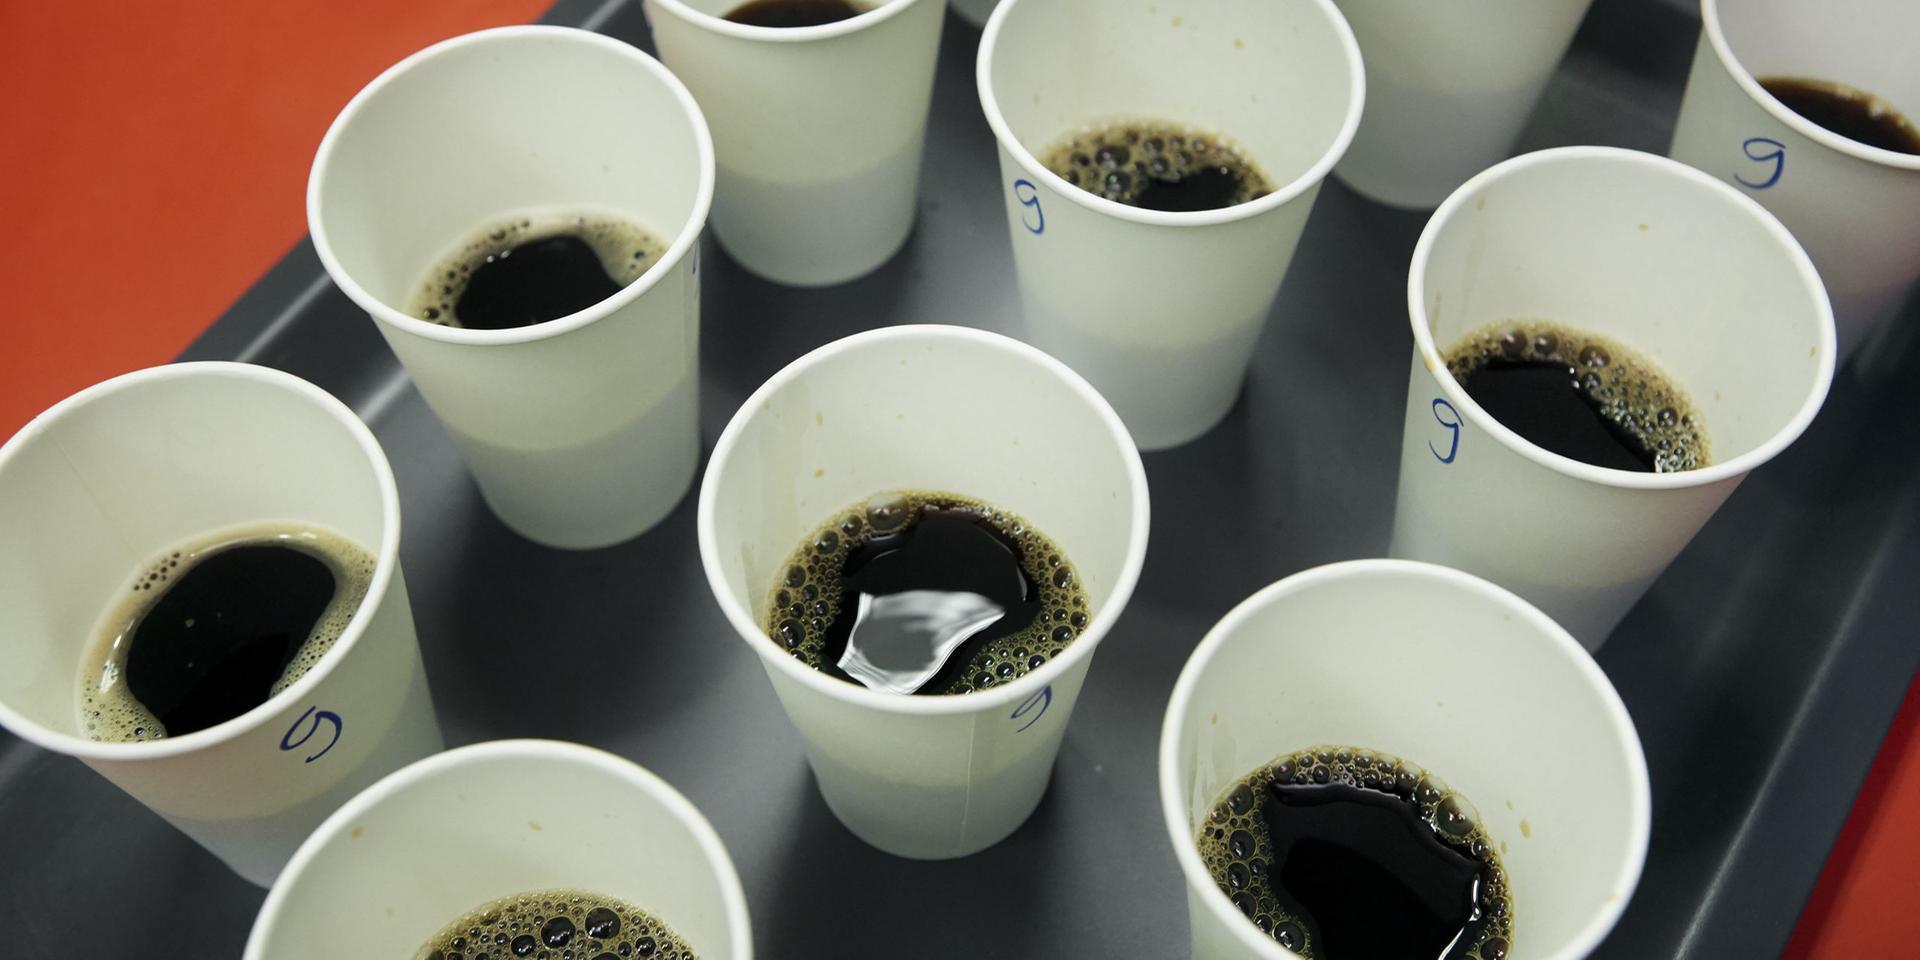 Kaffet blandades enligt de proportioner mellan pulver och vatten som angavs på burkarna. Testdeltagarna fick sedan lägga i mer kaffepulver om de tyckte att doseringen var för svag. Ingen tyckte att kaffet blev för starkt och behövde spädas med mer vatten.